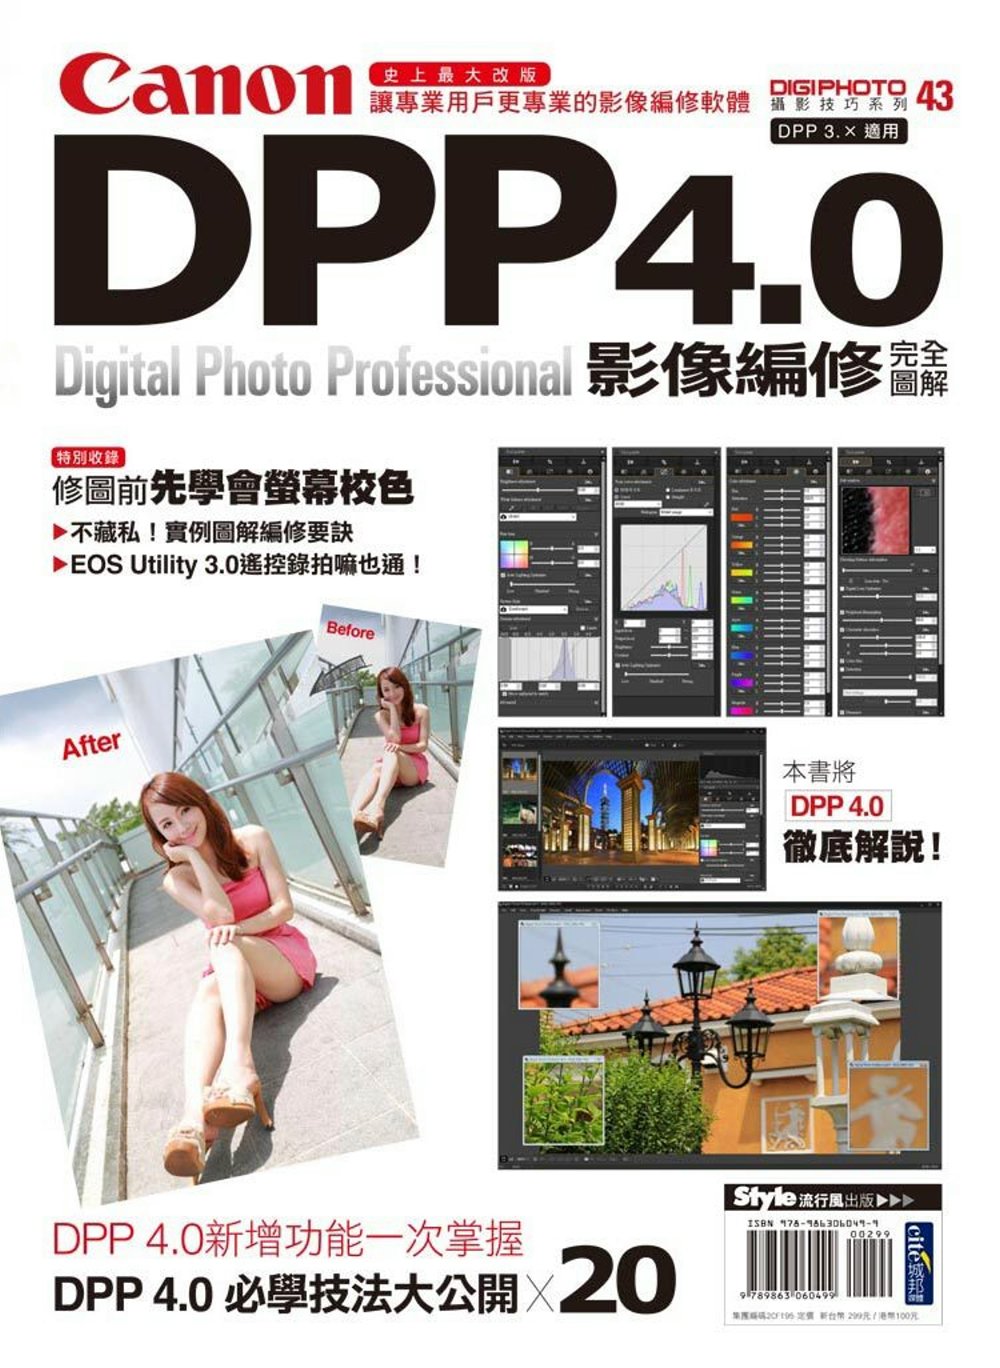 Canon DPP 4.0影像編修完全圖解